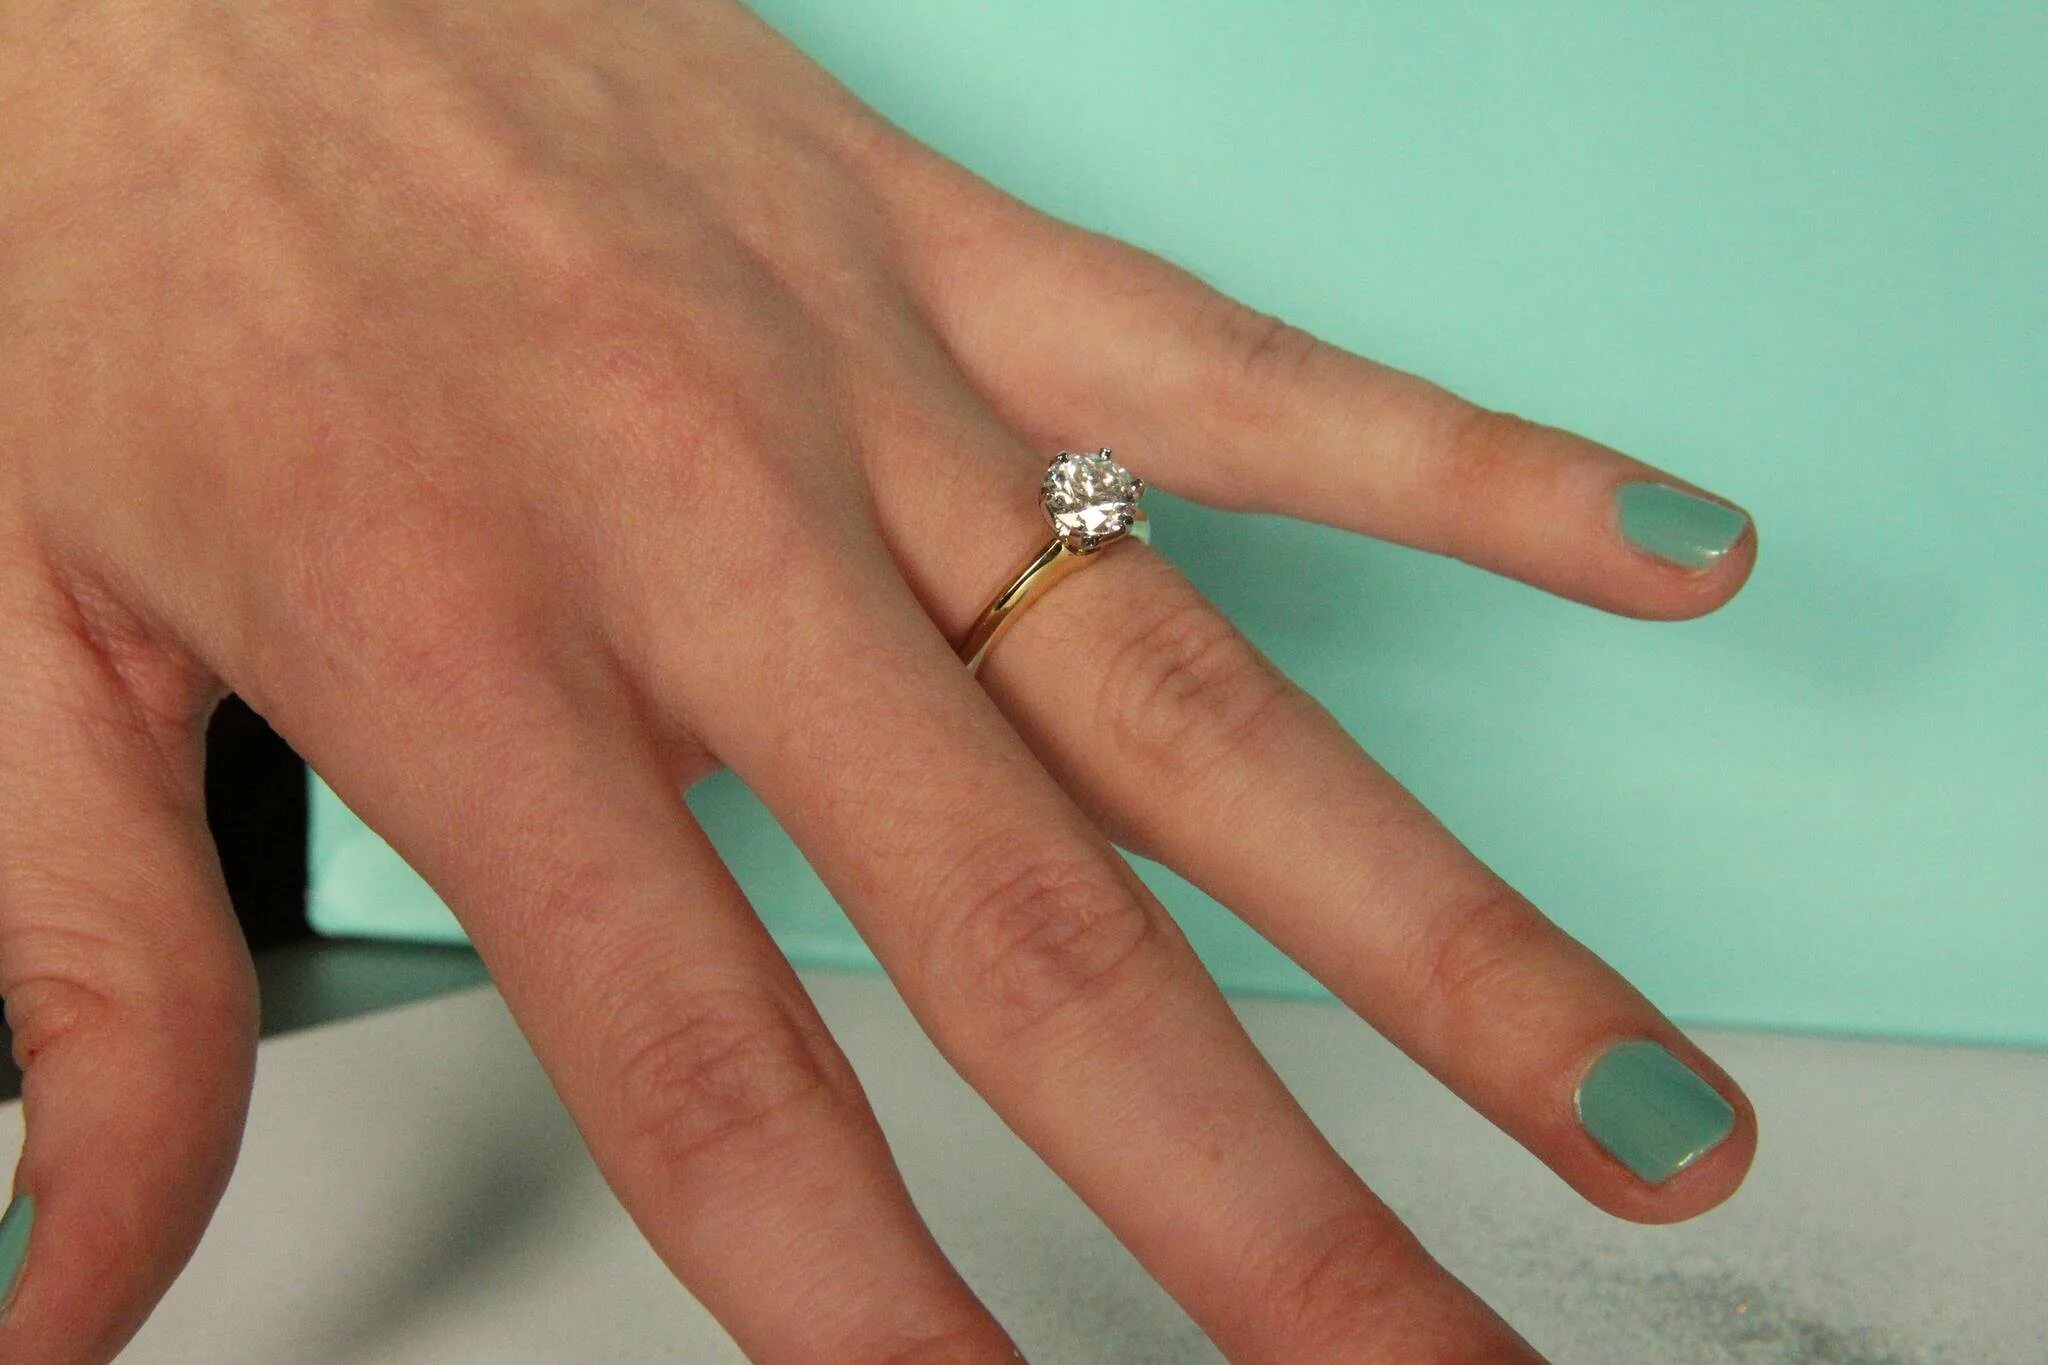 Кольцо на указательном пальце. Обручальное кольцо на пальце. Кольцо на безымянном пальце. Помолвочное кольцо на пальце.